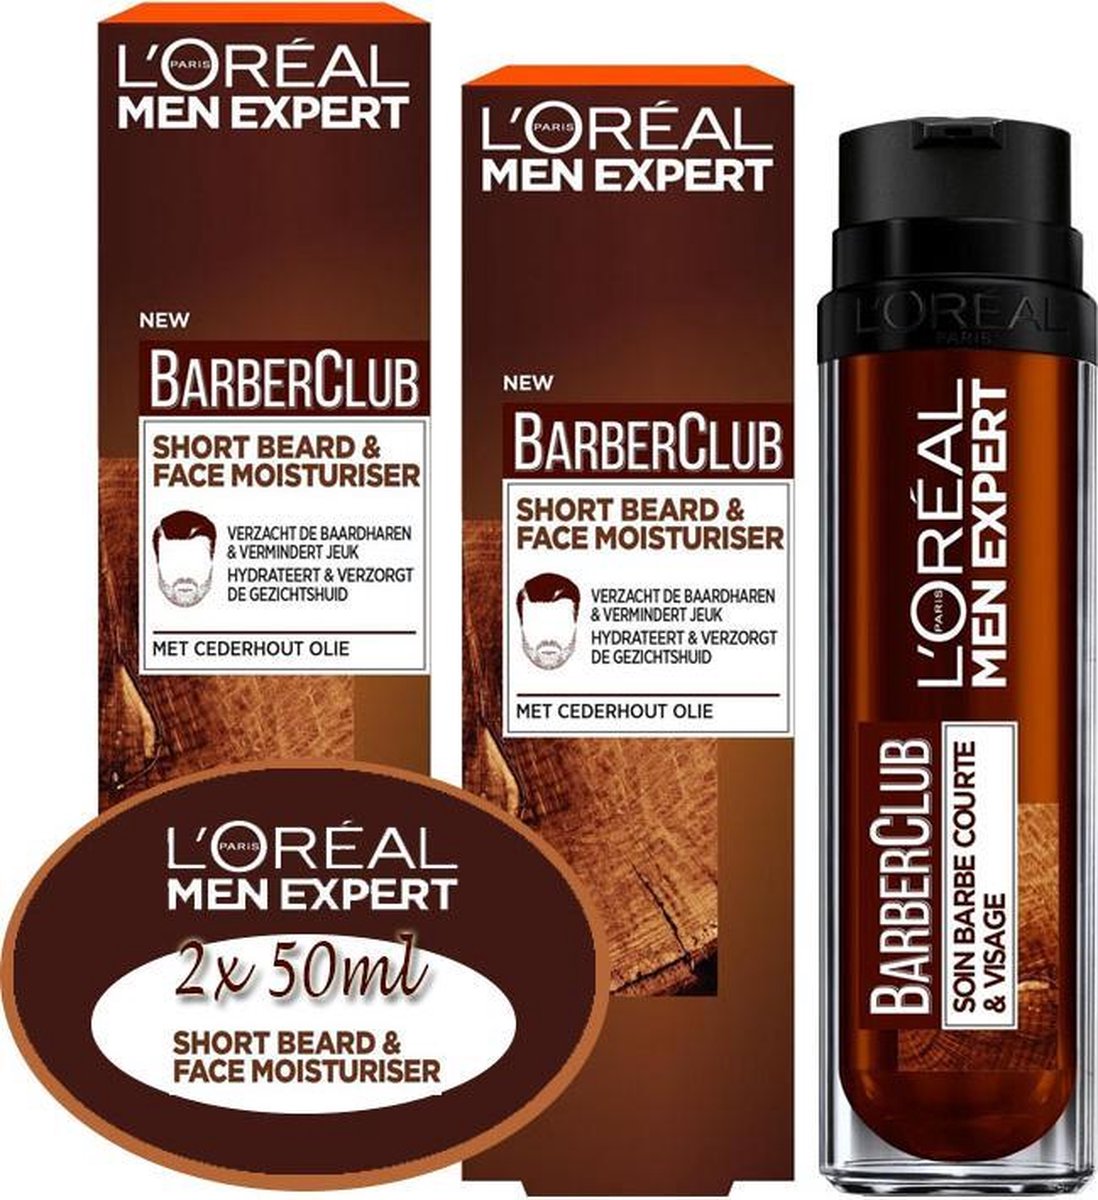 L'Oréal Paris Men Expert BarberClub Short Beard & Face Moisturiser- 2X 50ML voordeel pak